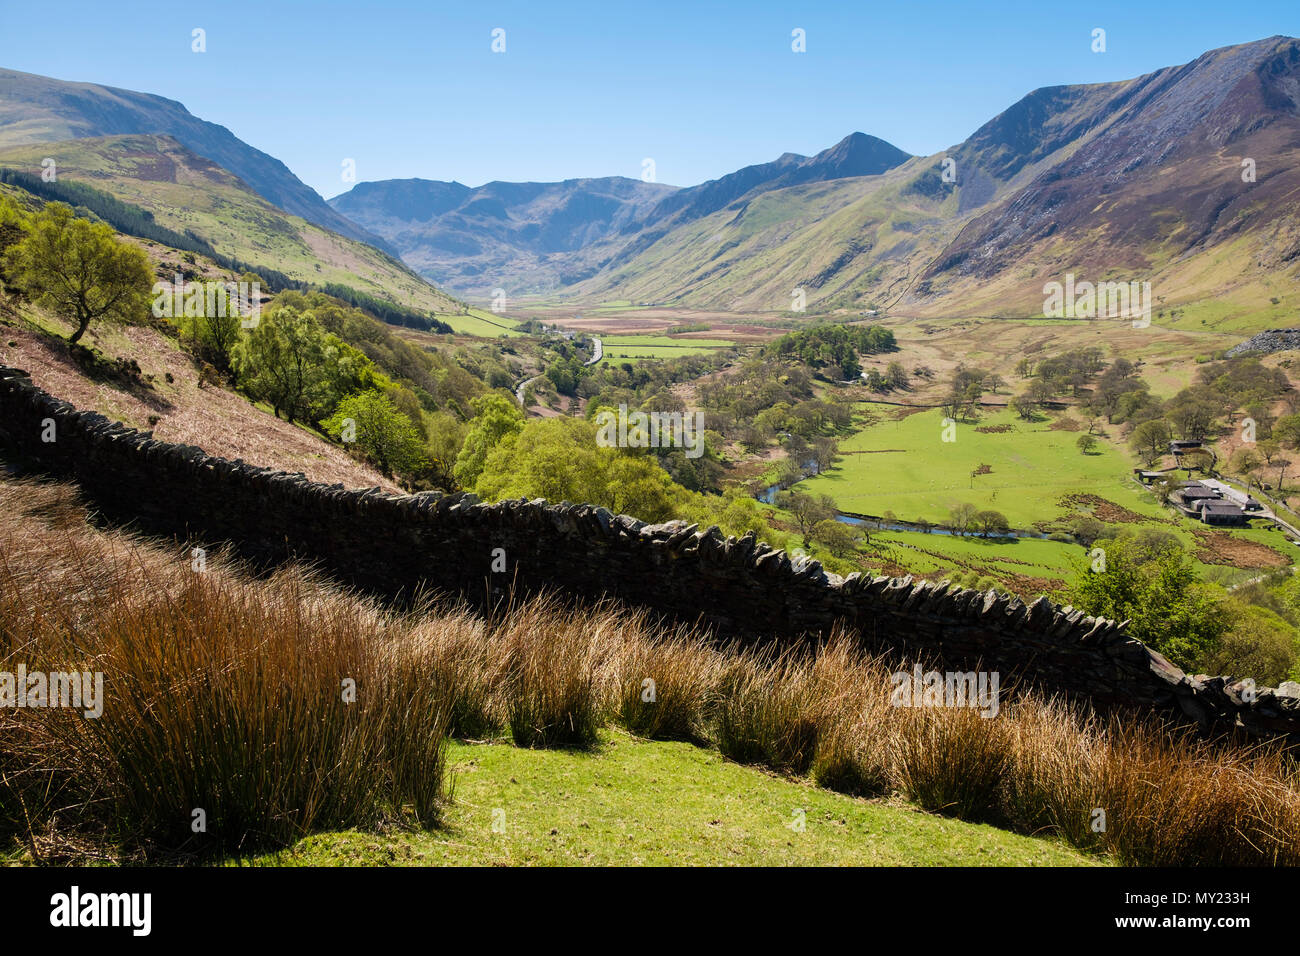 Visualiser jusqu'Nant Ffrancon valley vers Glyderau montagnes de Snowdonia National Park (Eryri) en été. Bethesda, Gwynedd, au nord du Pays de Galles, Royaume-Uni, Angleterre Banque D'Images